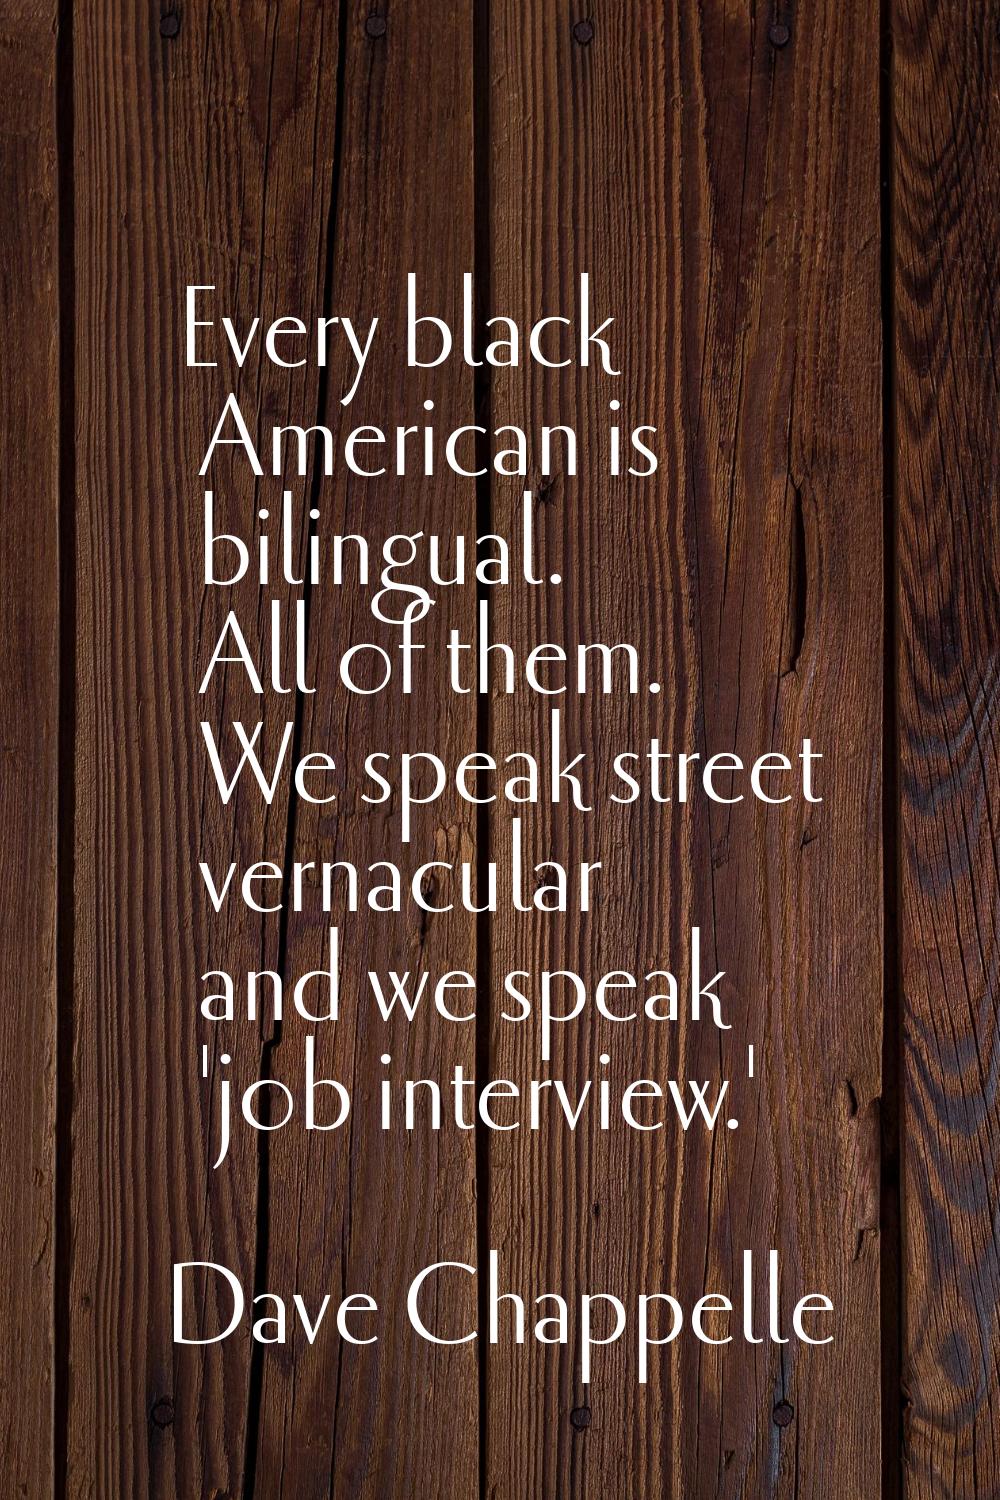 Every black American is bilingual. All of them. We speak street vernacular and we speak 'job interv